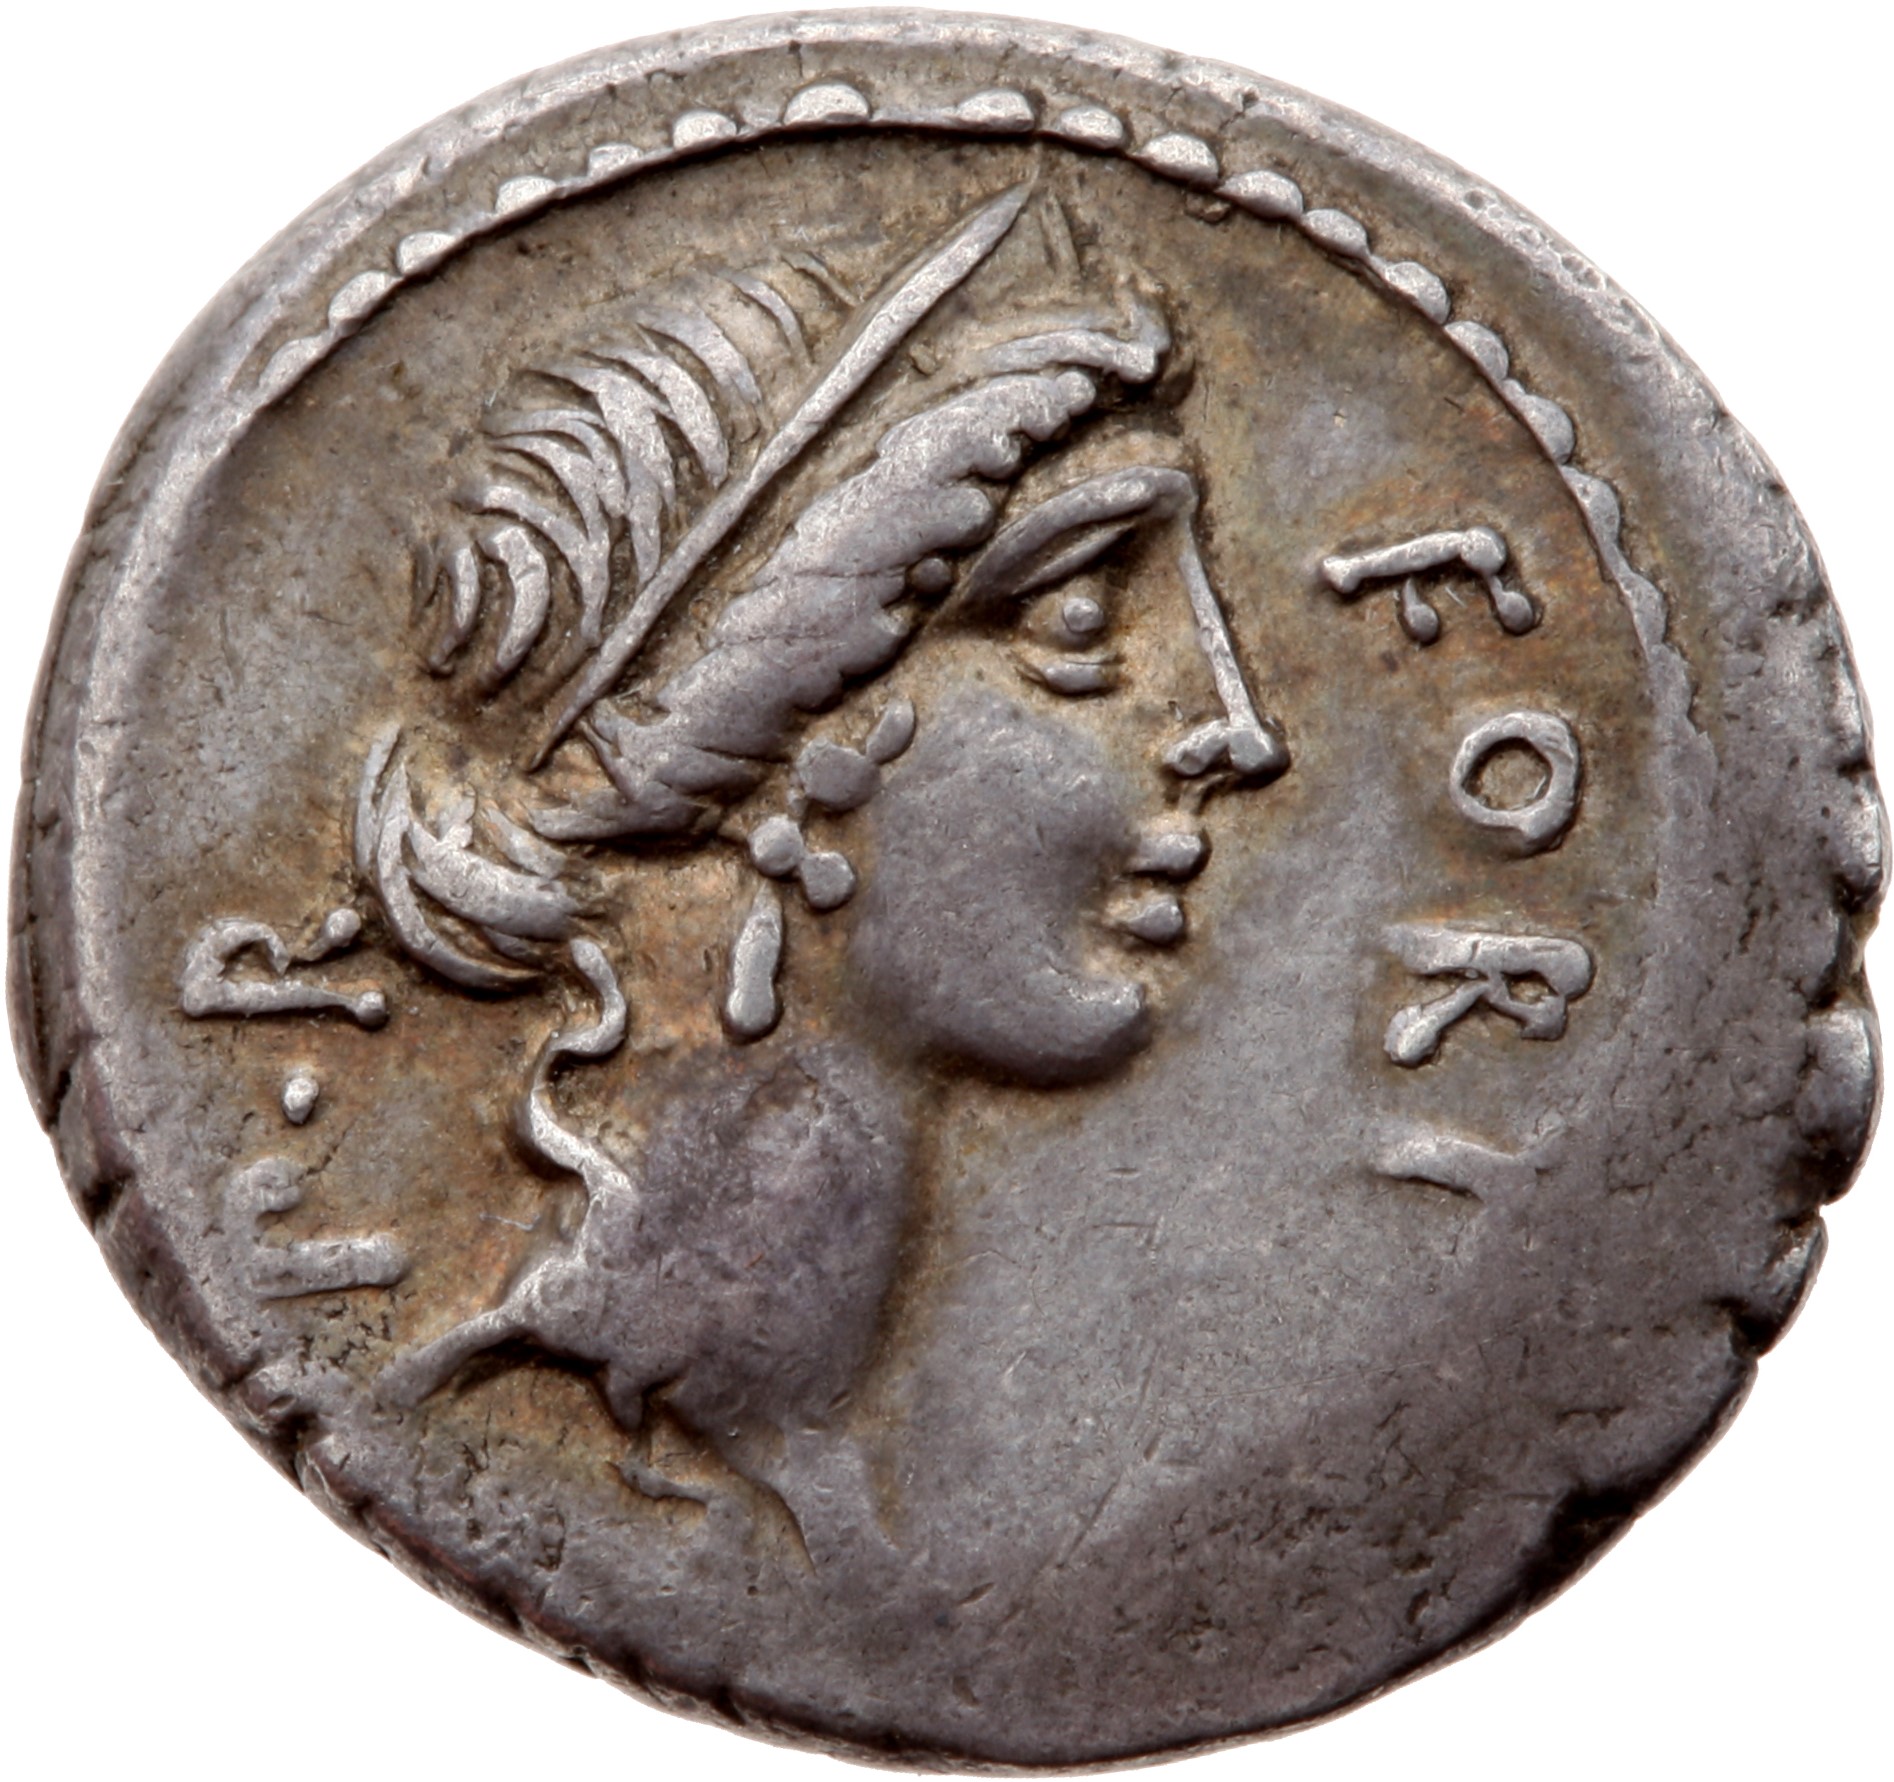 Römische Republik: Q. Sicinius